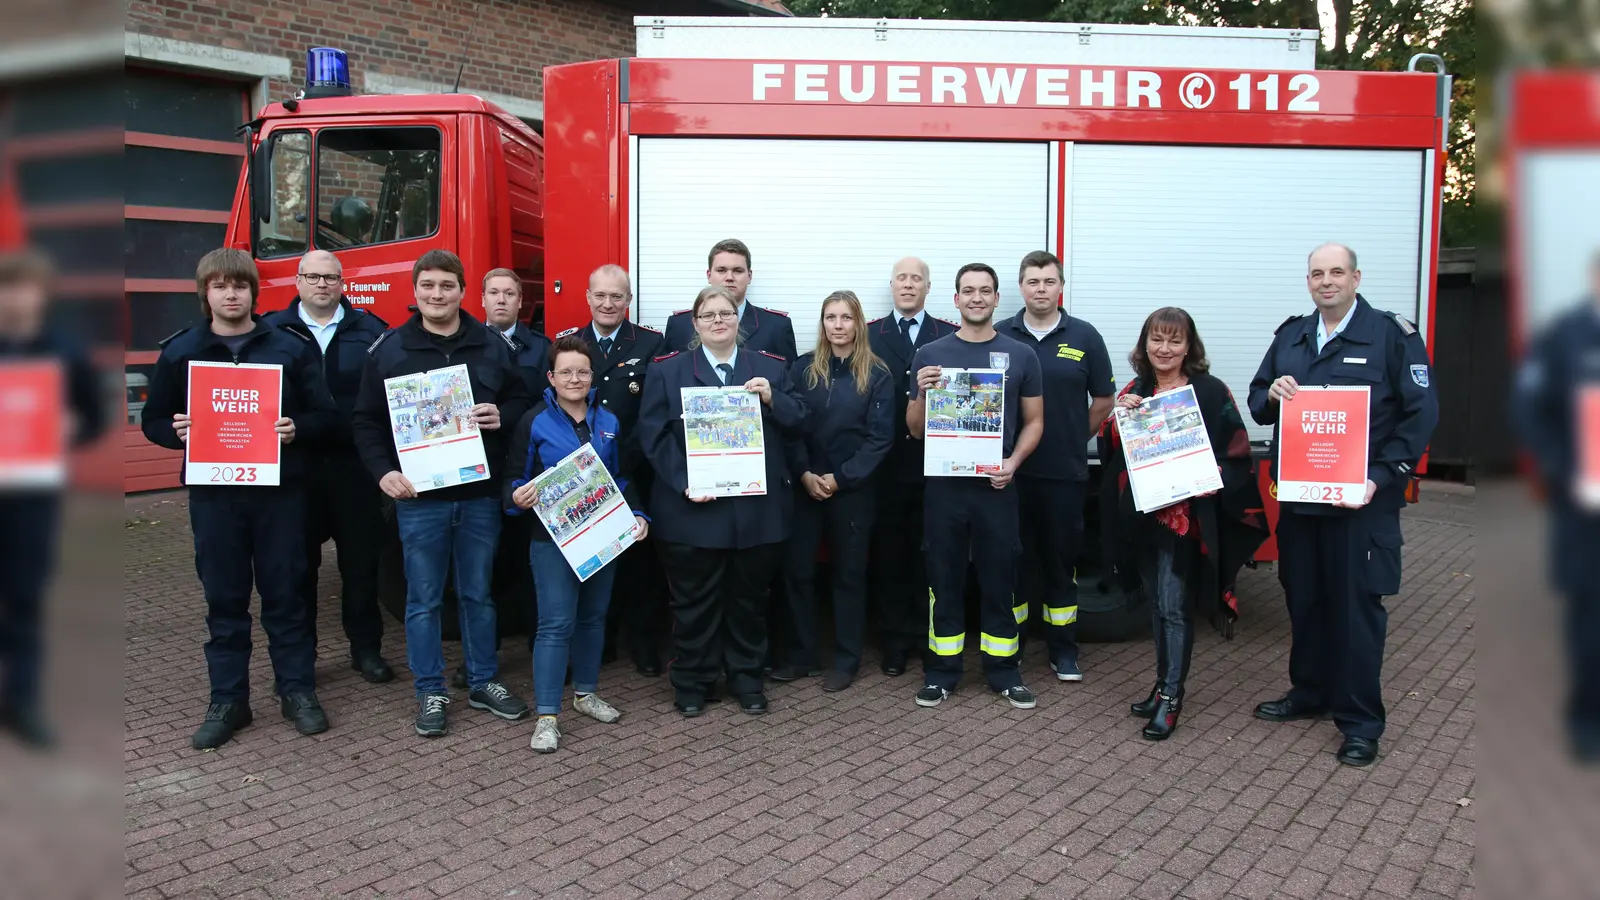 Alina Buddensiek, Mediavertreterin des Schaumburger Wochenblattes, übergibt die Kalender an die Obernkirchener Feuerwehren. (Foto: bb)